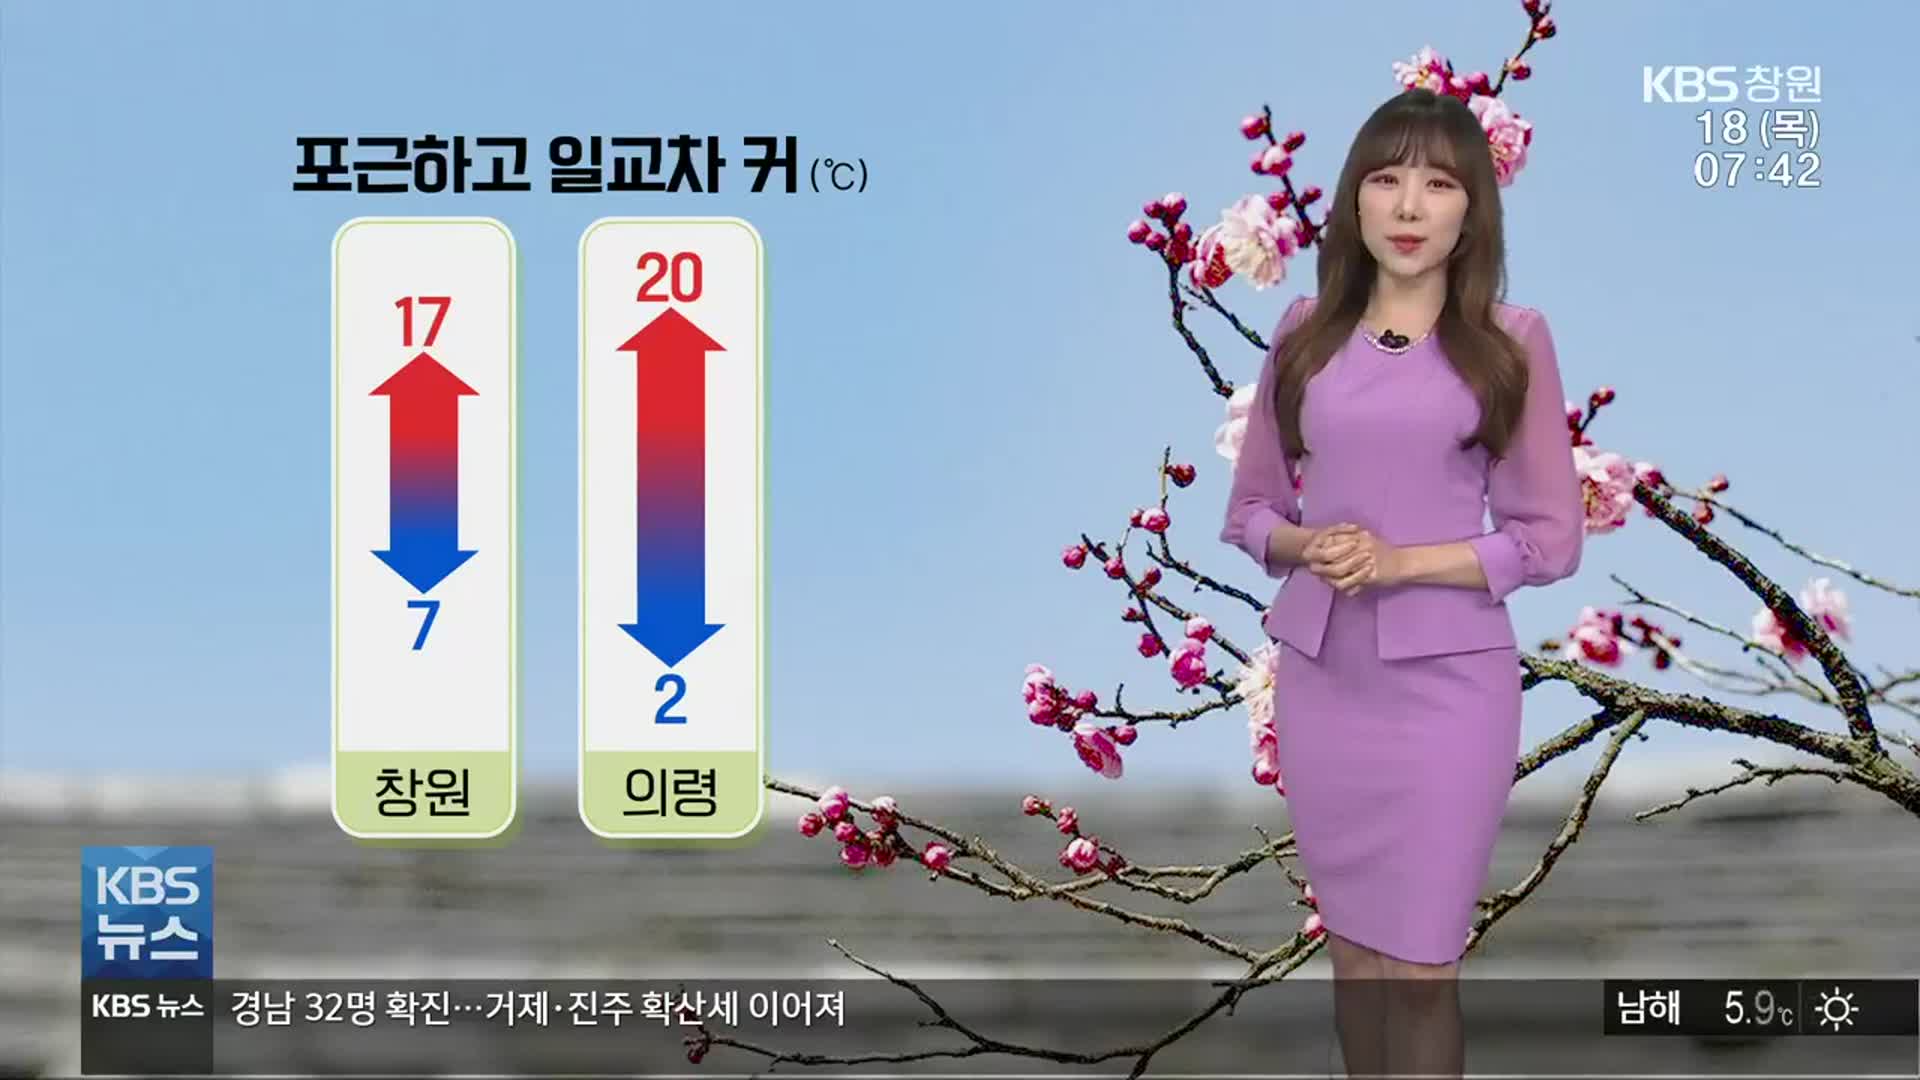 [날씨] 경남 낮 기온 20도 안팎으로 포근…다음 주 벚꽃 개화